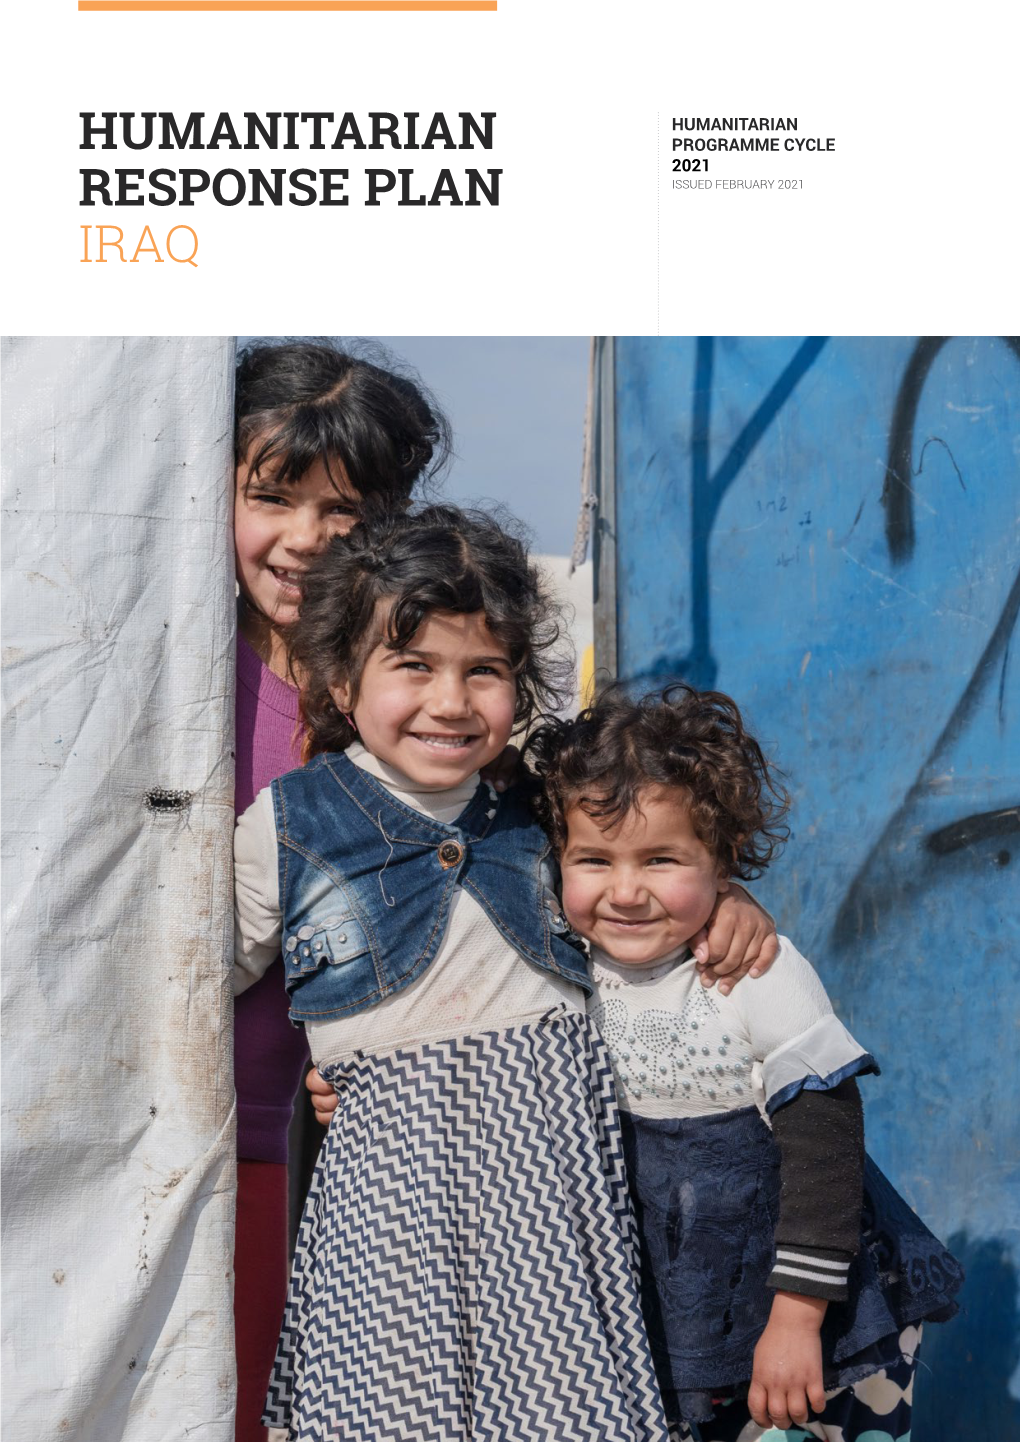 Iraq Humanitarian Response Plan 2021